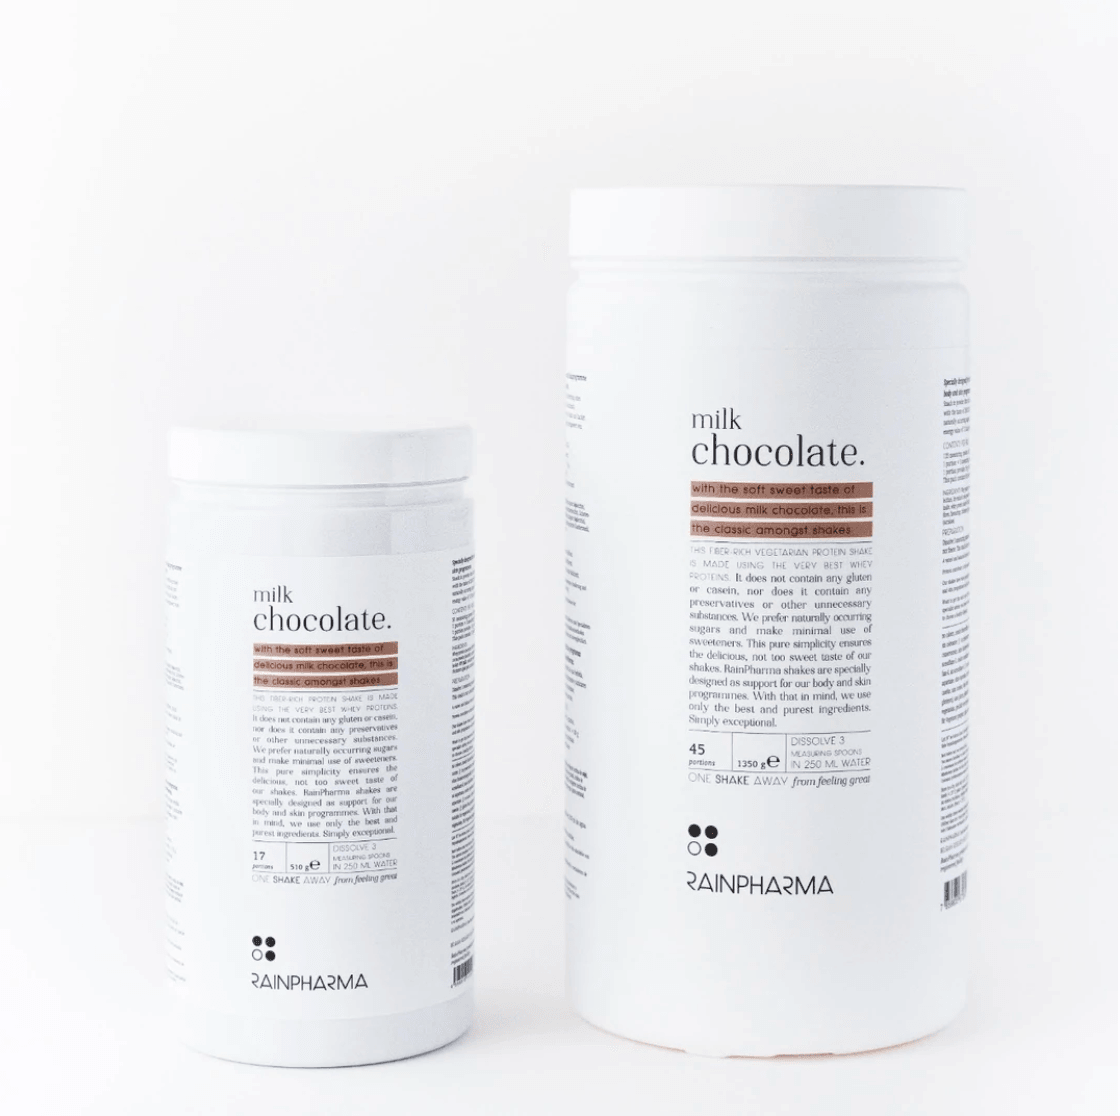 Twee XL Shake Milk Chocolate-containers van RainPharma, weergegeven tegen een witte achtergrond, met de voorkant en de zijkant met voedingsinformatie.